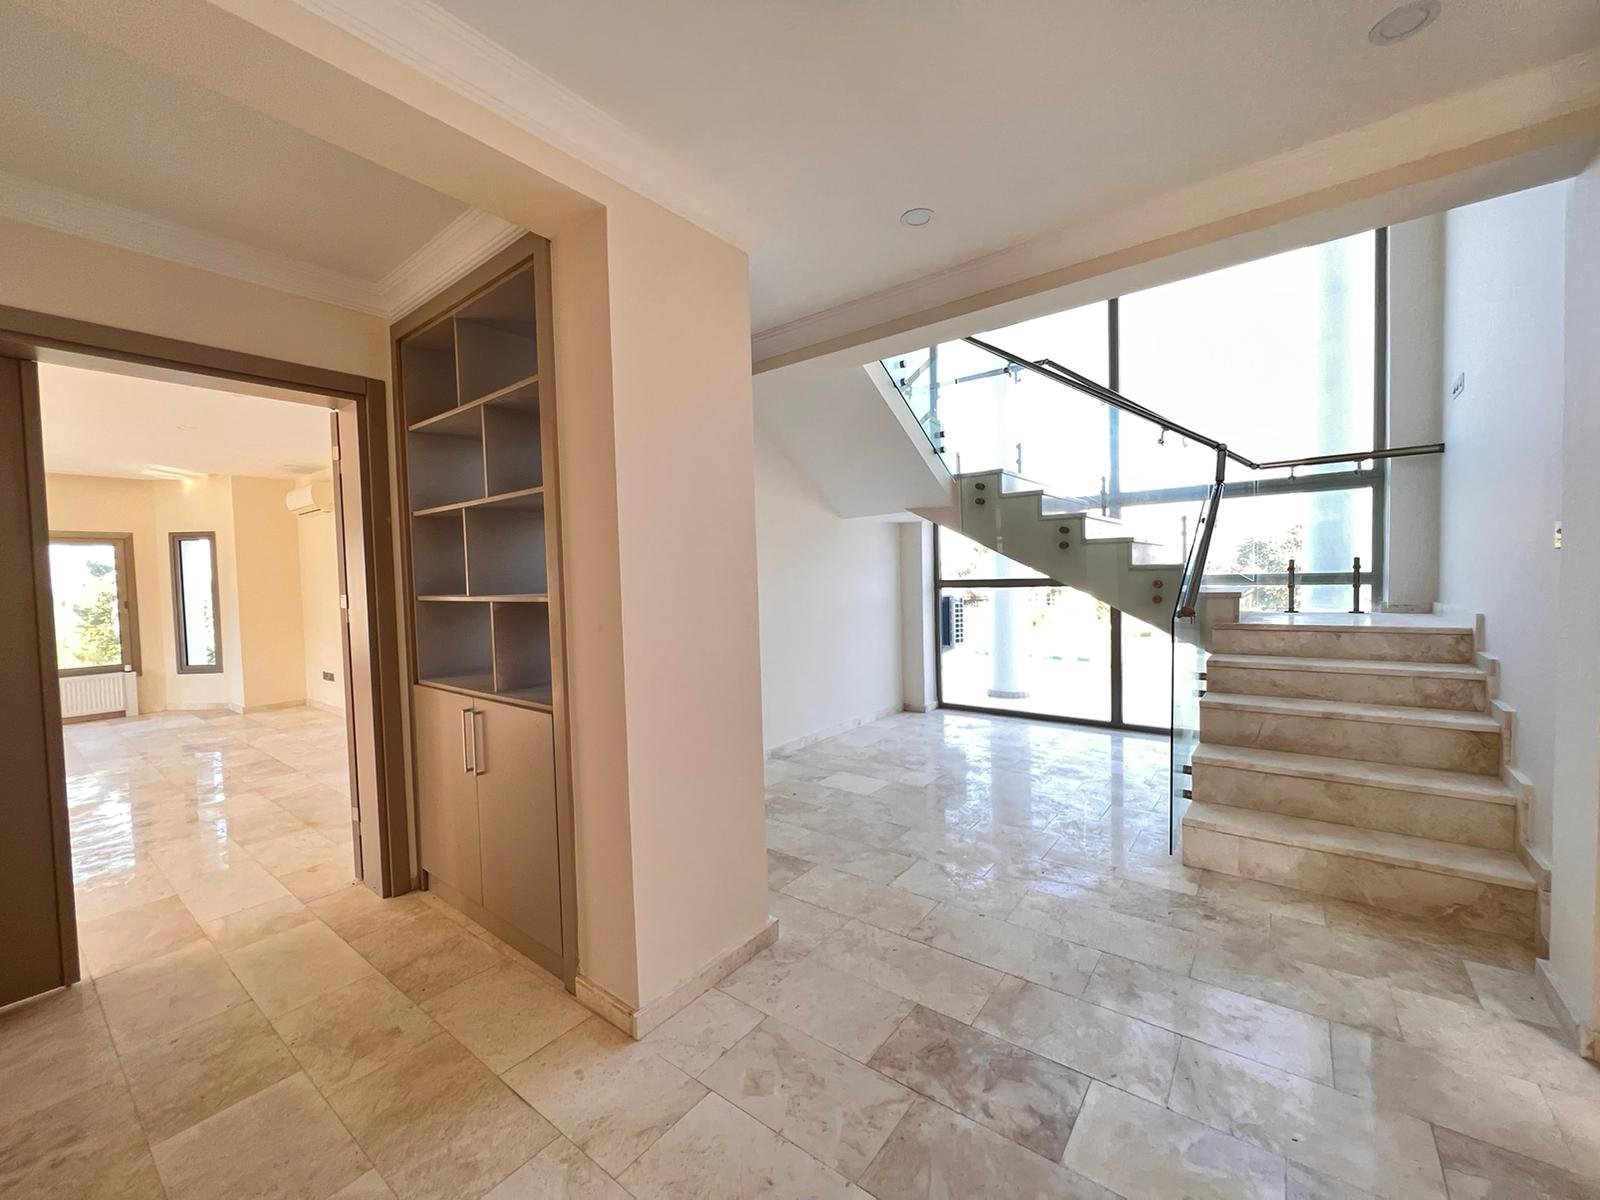 3 Bedroom Villa For Salein Kyrenia, Bellapais-eebf9cba-8576-4276-9d08-aee4d80a8709